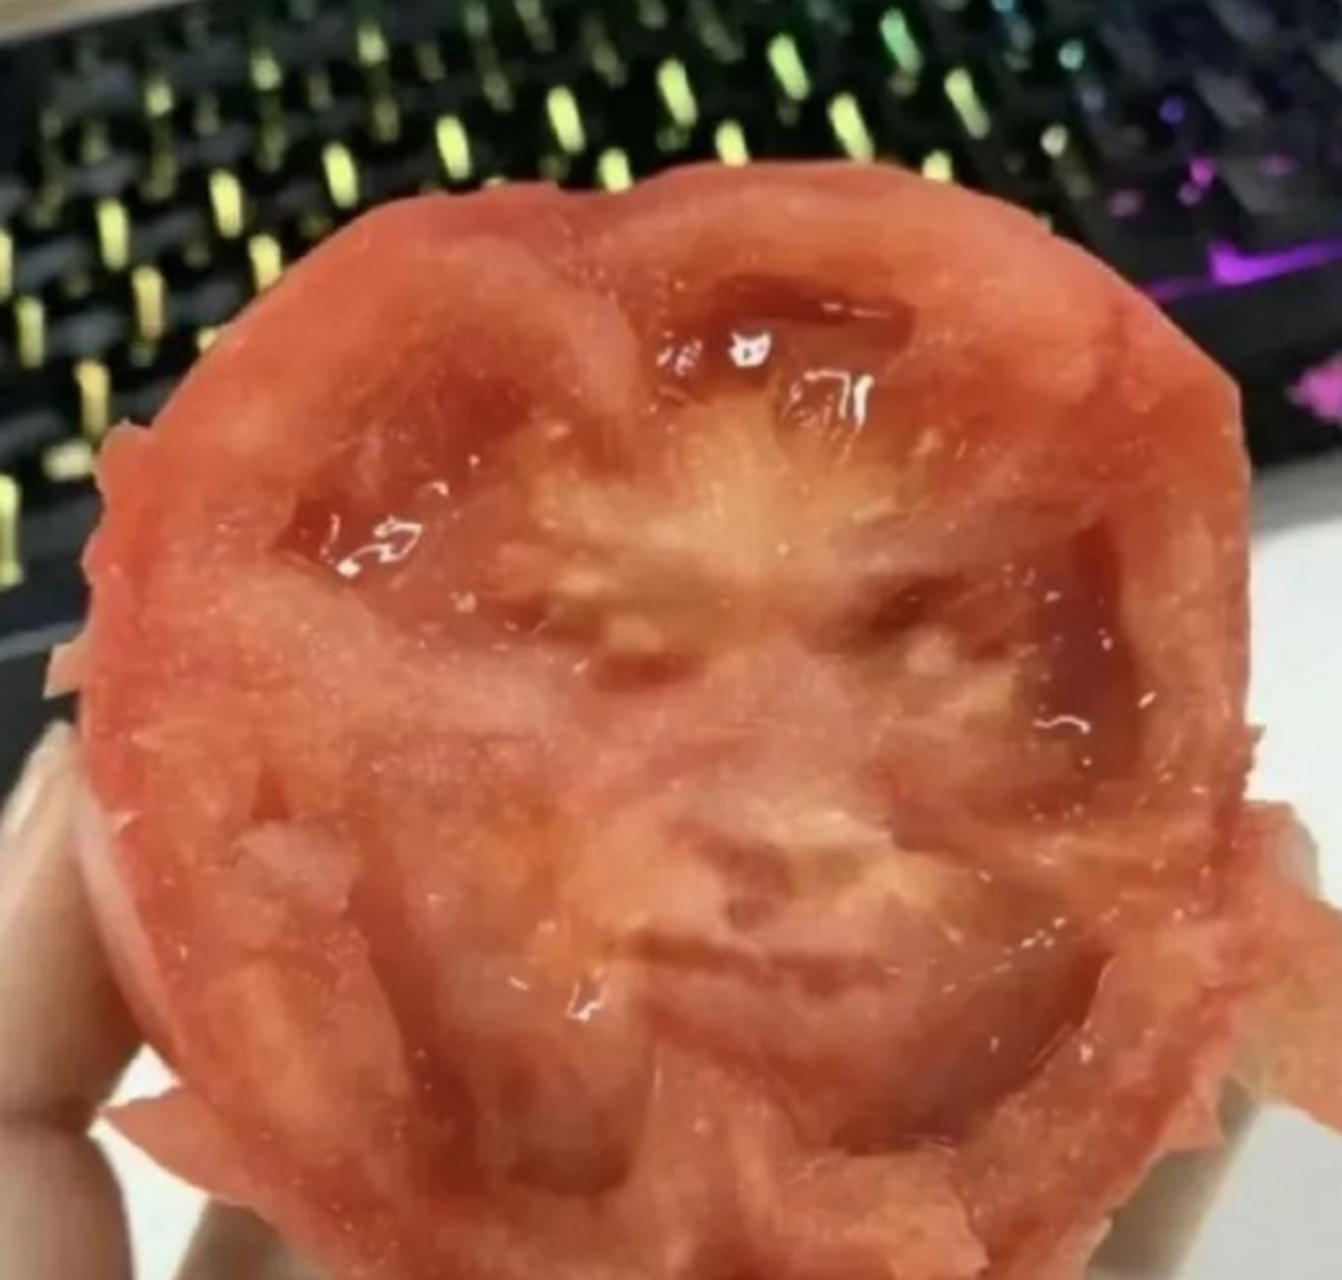 西红柿人脸表情包图片